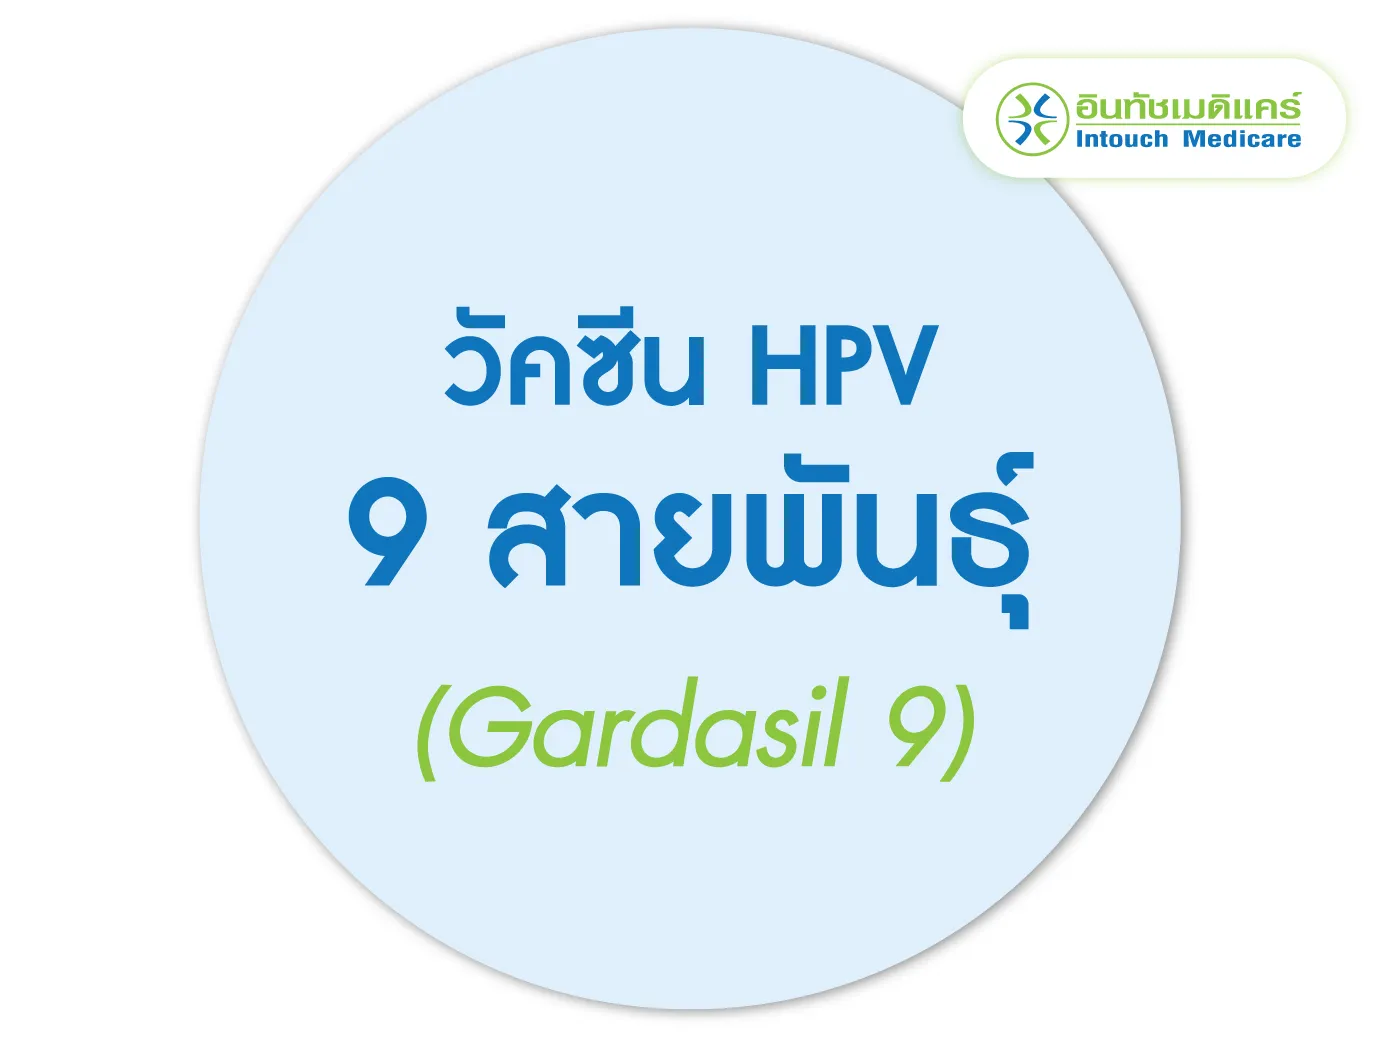 วัคซีน 9 สายพันธุ์ (Gardasil 9)